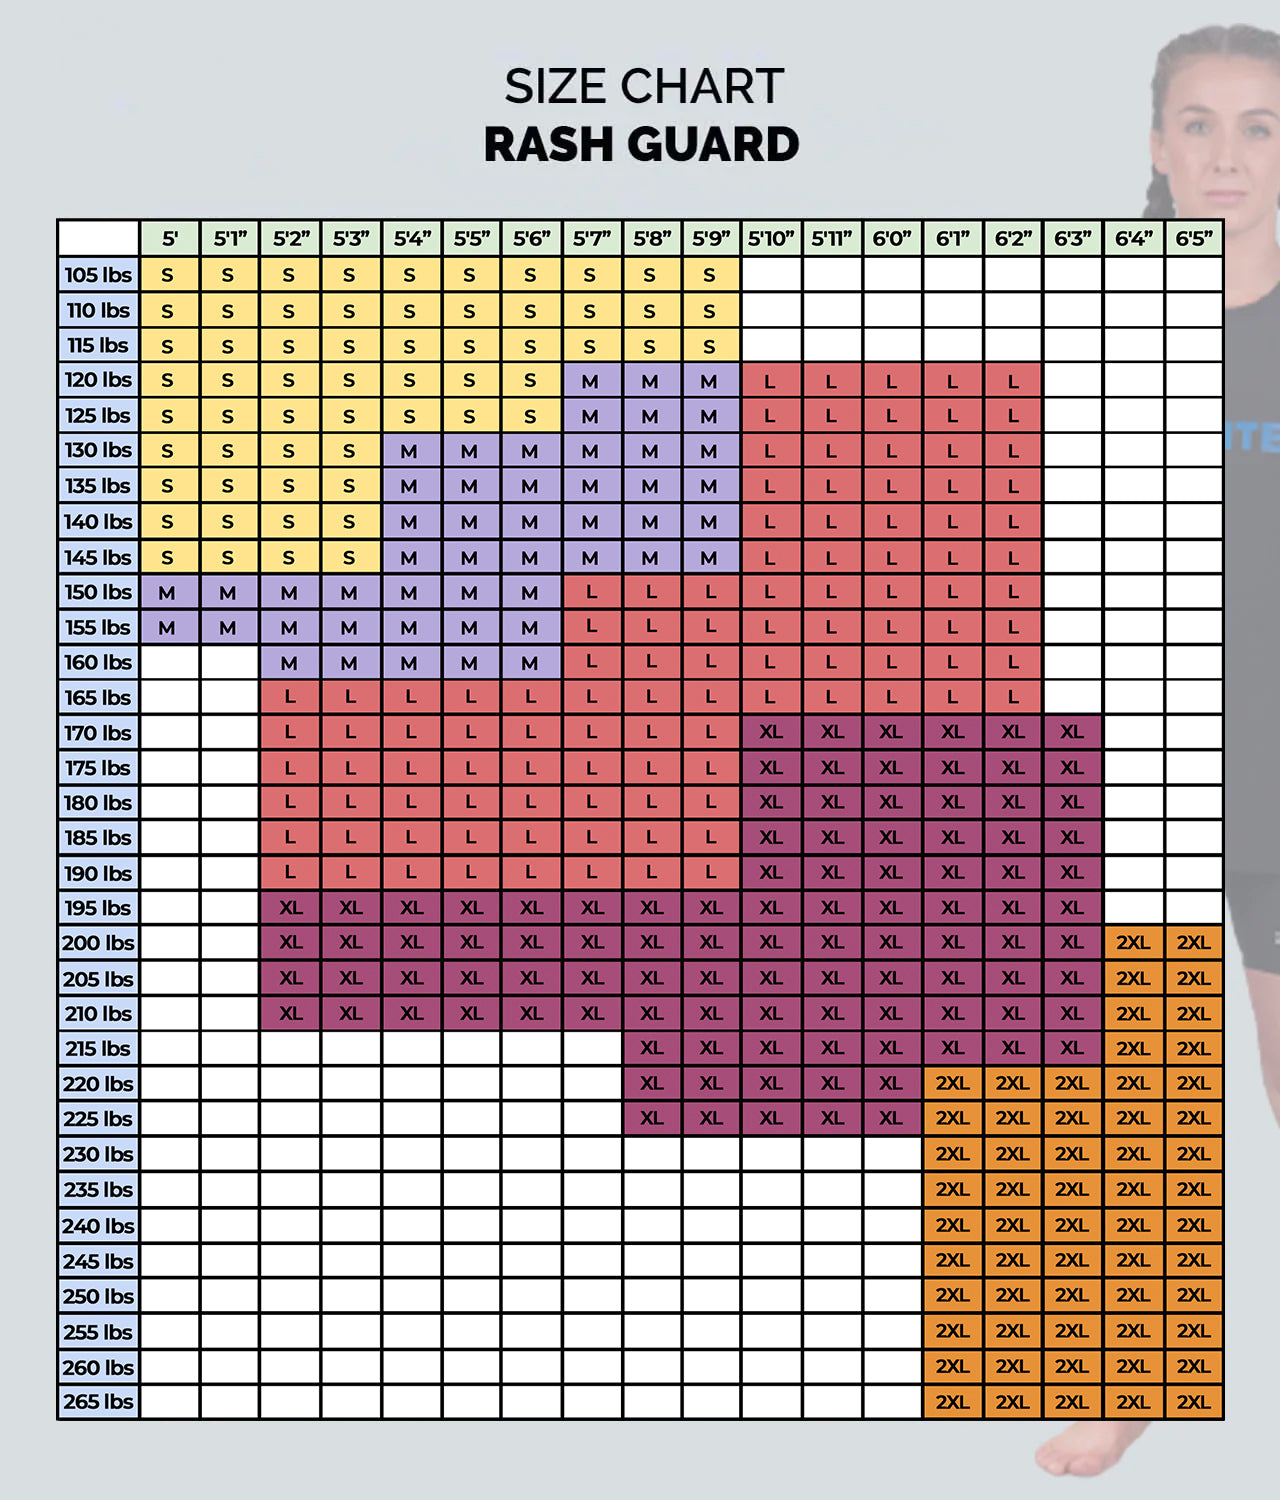 Elite Sports Women's Standard Gray Long Sleeve MMA Rash Guard Size Guide